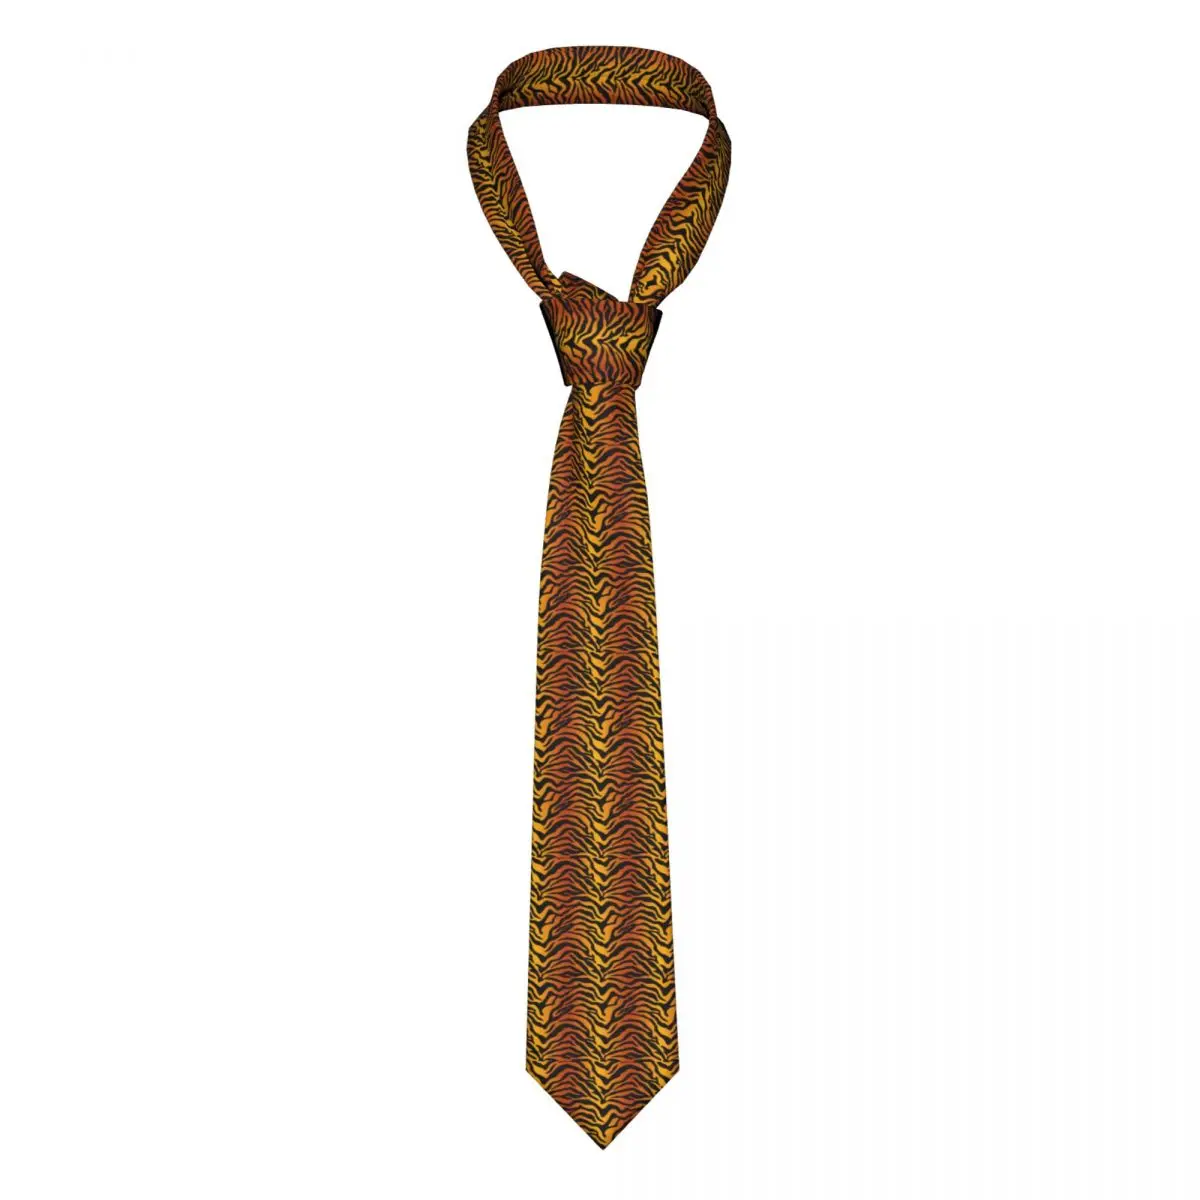 

Галстук с принтом тигра, аксессуары в черную полоску, мужские галстуки на шею, модный галстук из полиэстера и шелка, Официальный галстук